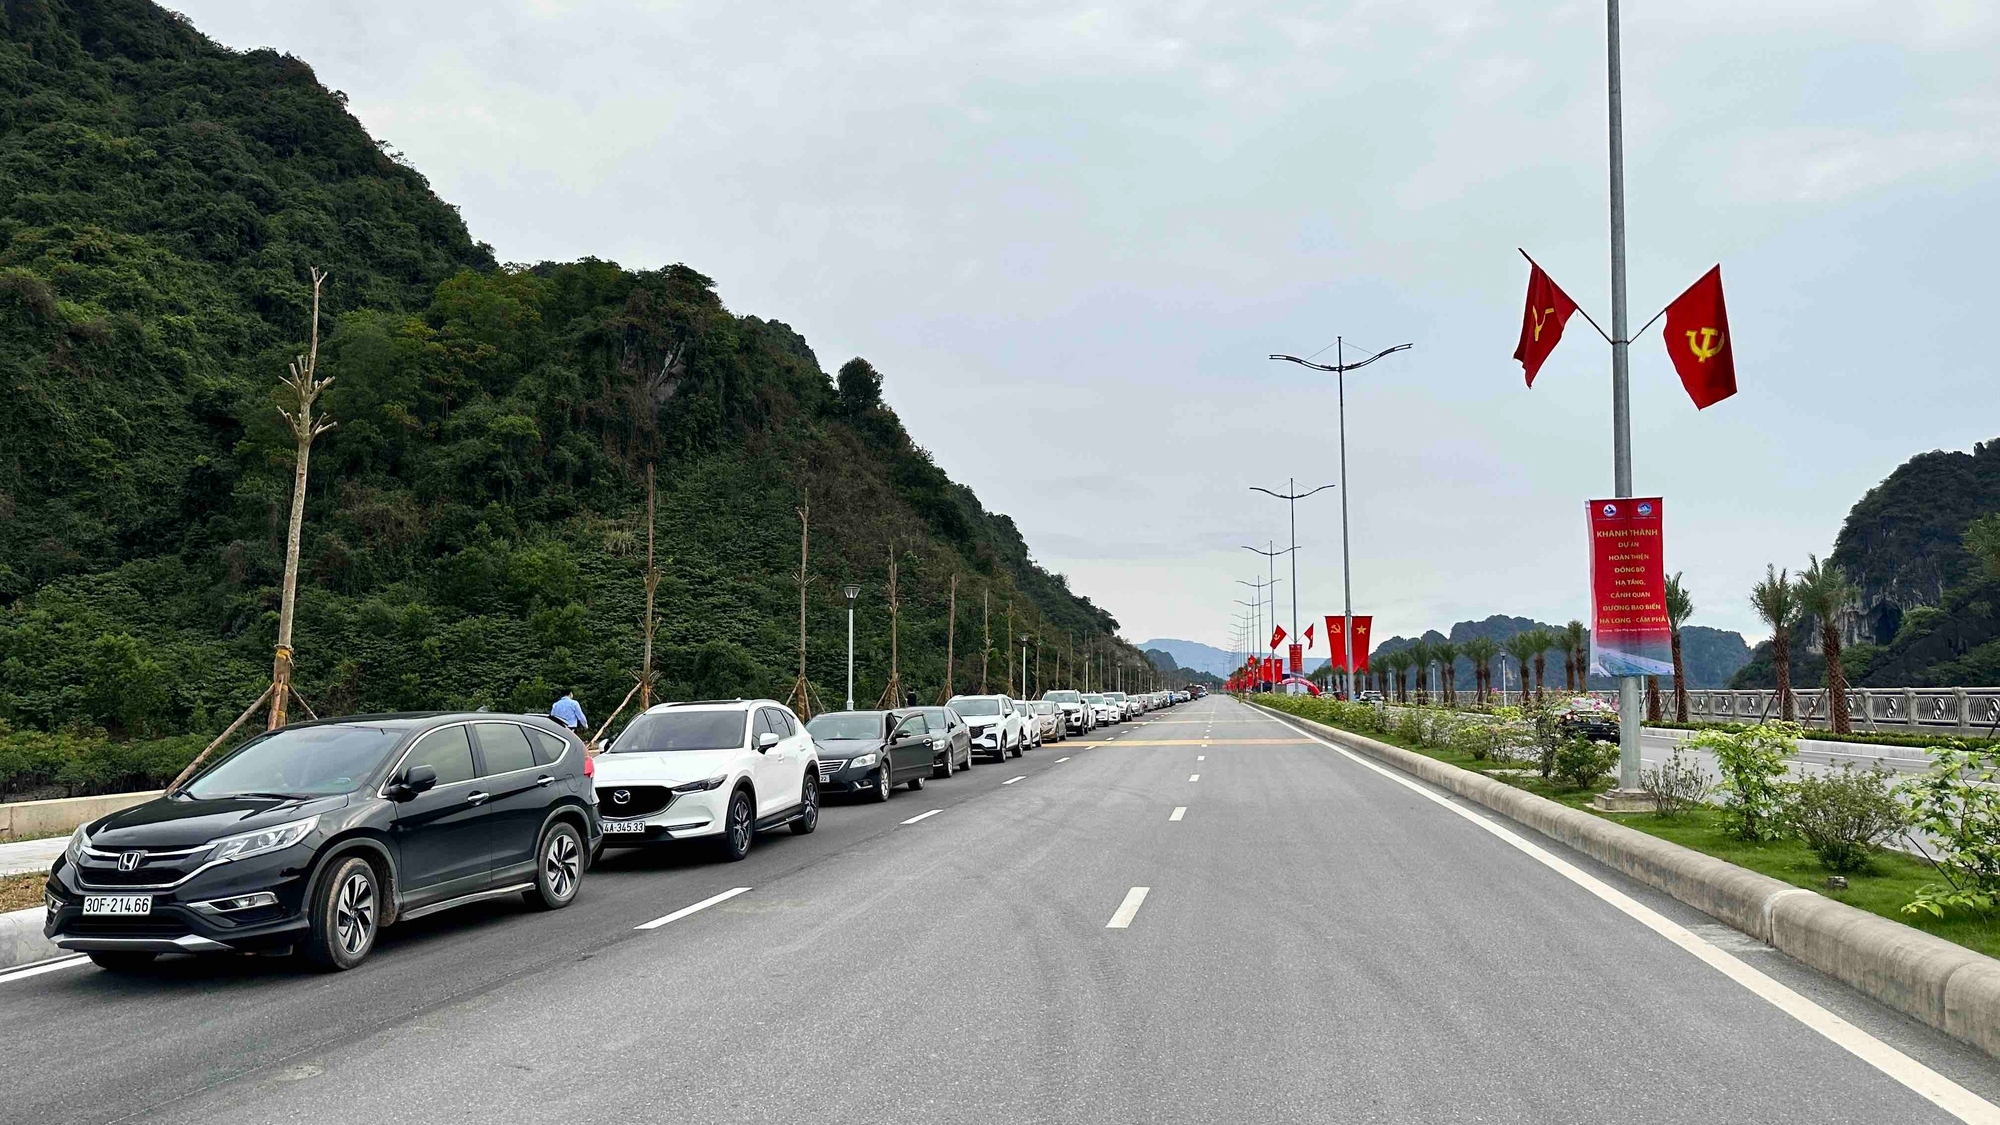 Quảng Ninh lần 2 khánh thành đường bao biển Hạ Long - Cẩm Phả  - Ảnh 2.